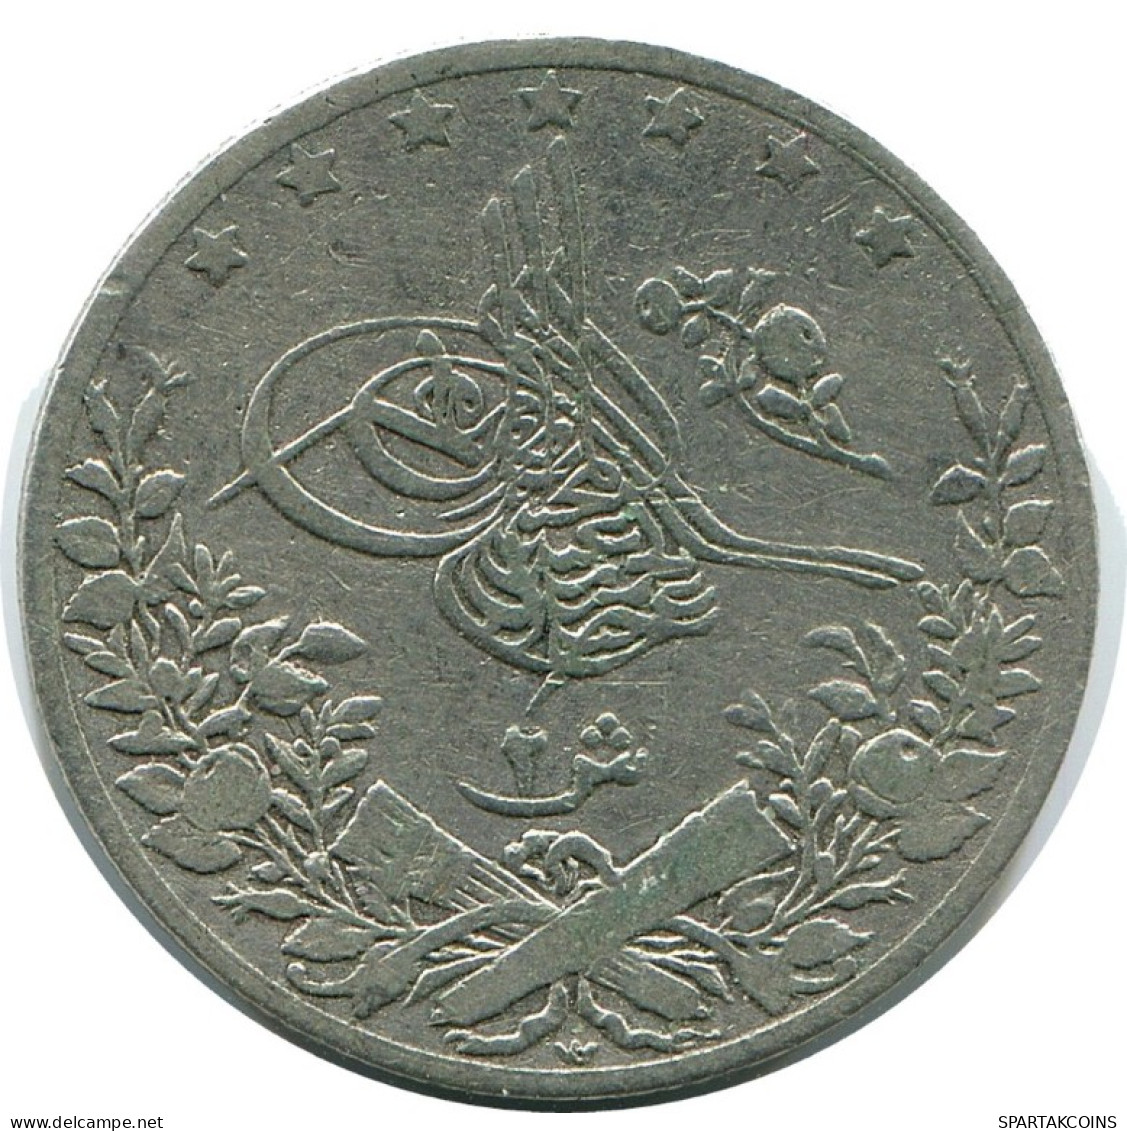 2 QIRSH 1891 EGYPT Islamic Coin #AH284.10.U.A - Egypt